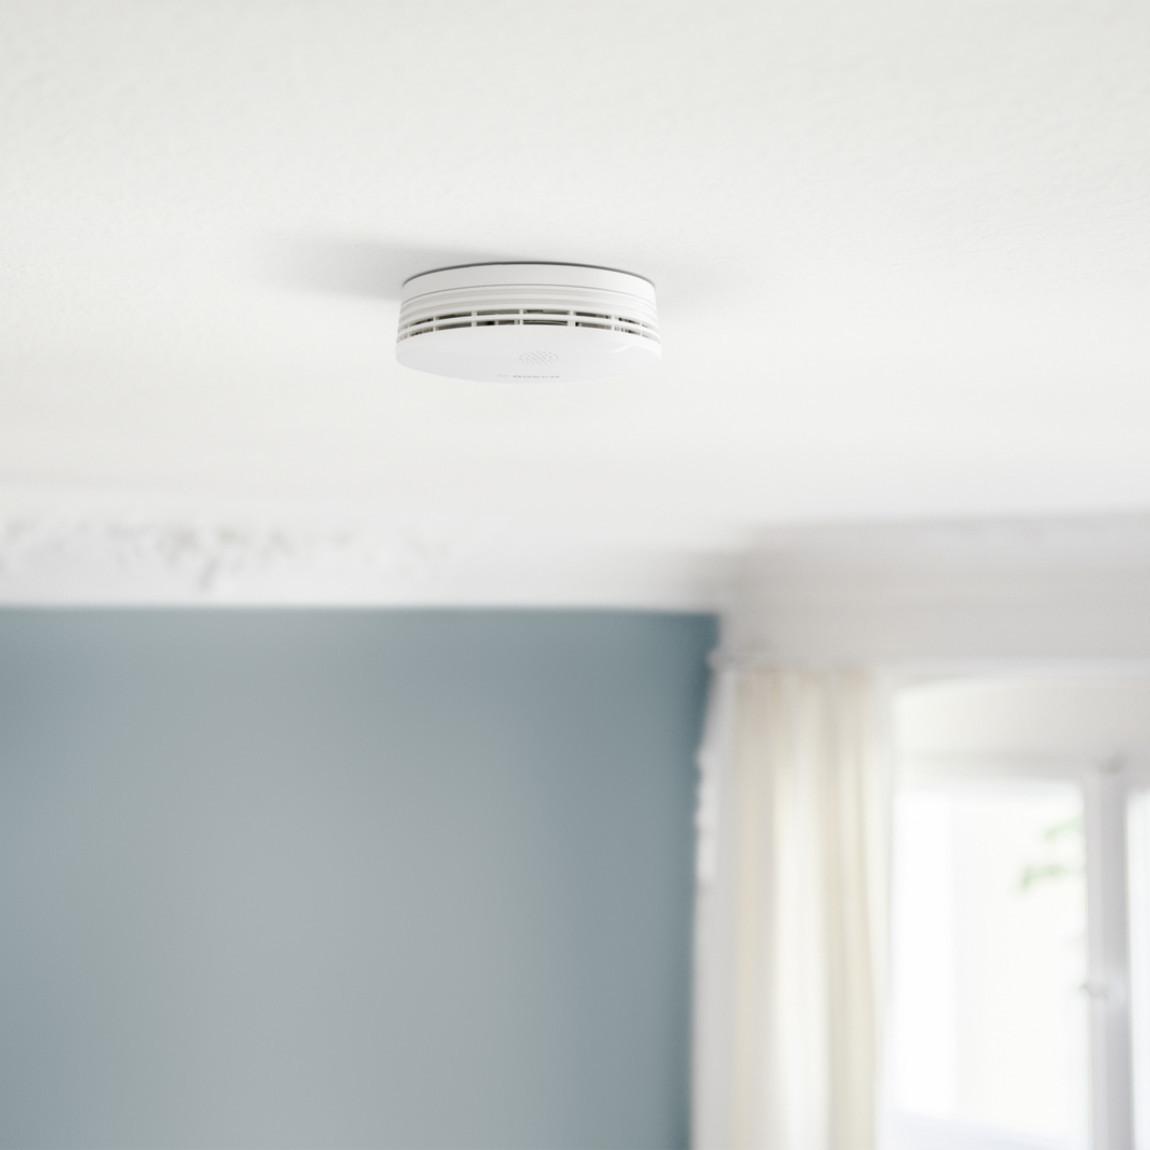 Bosch Smart Home - Starter Set Alarm_Rauchwarnmelder an Decke